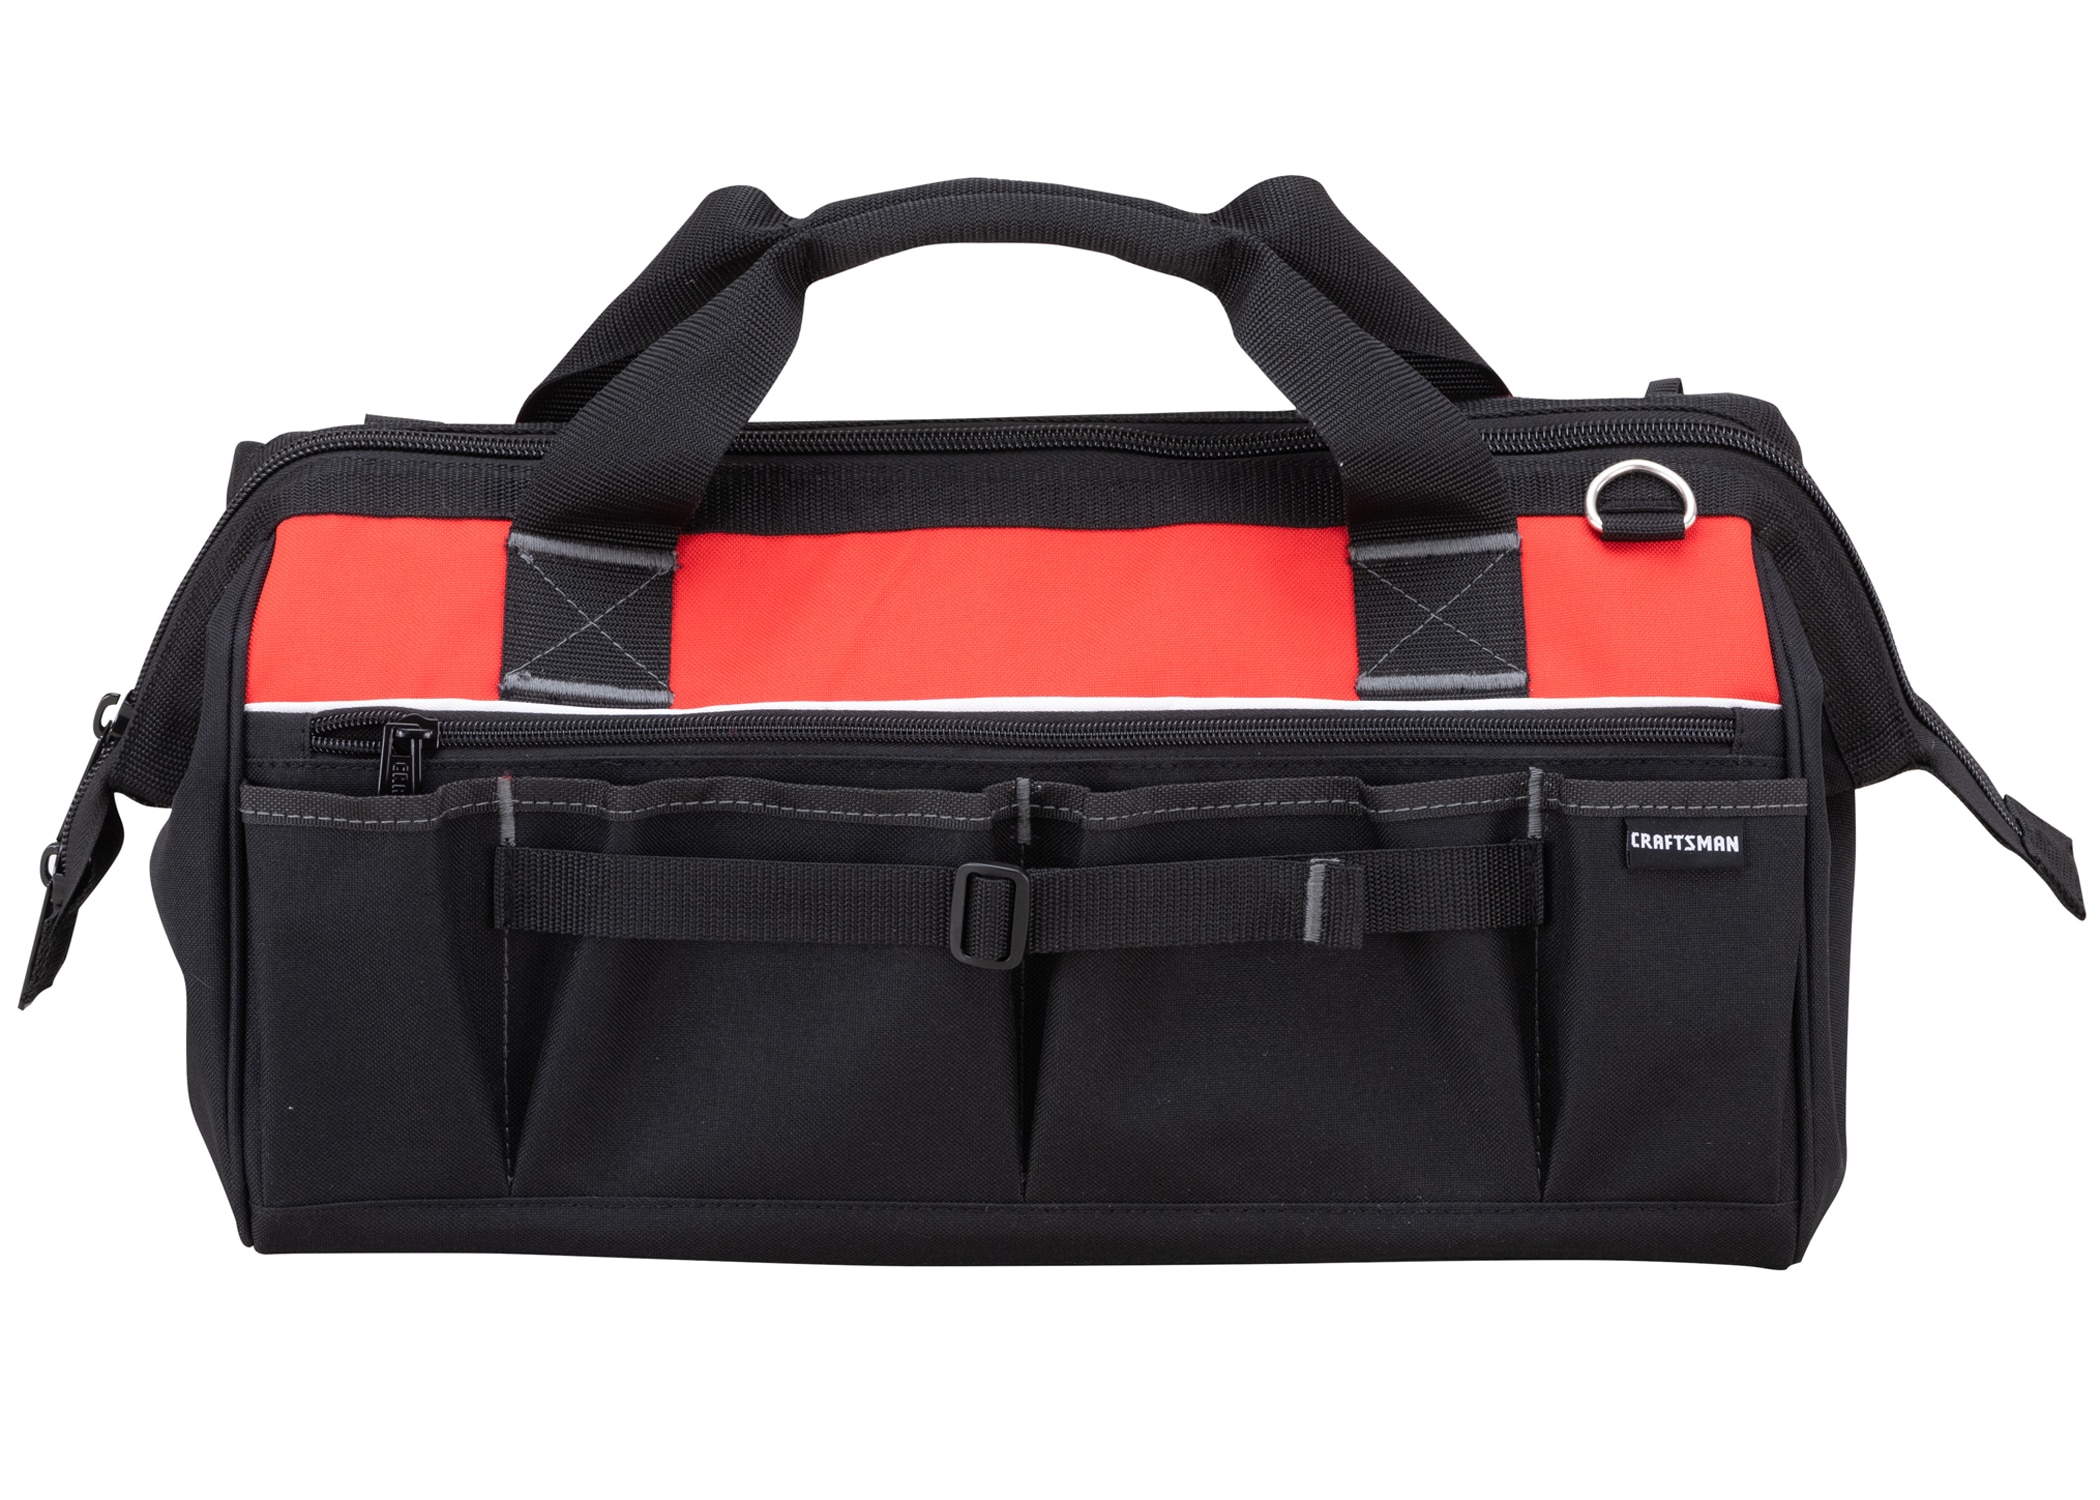 Facom Tools Red Black Tote Bag Storage Tool Bag like ToolBox 42 x 24 x 34  cm